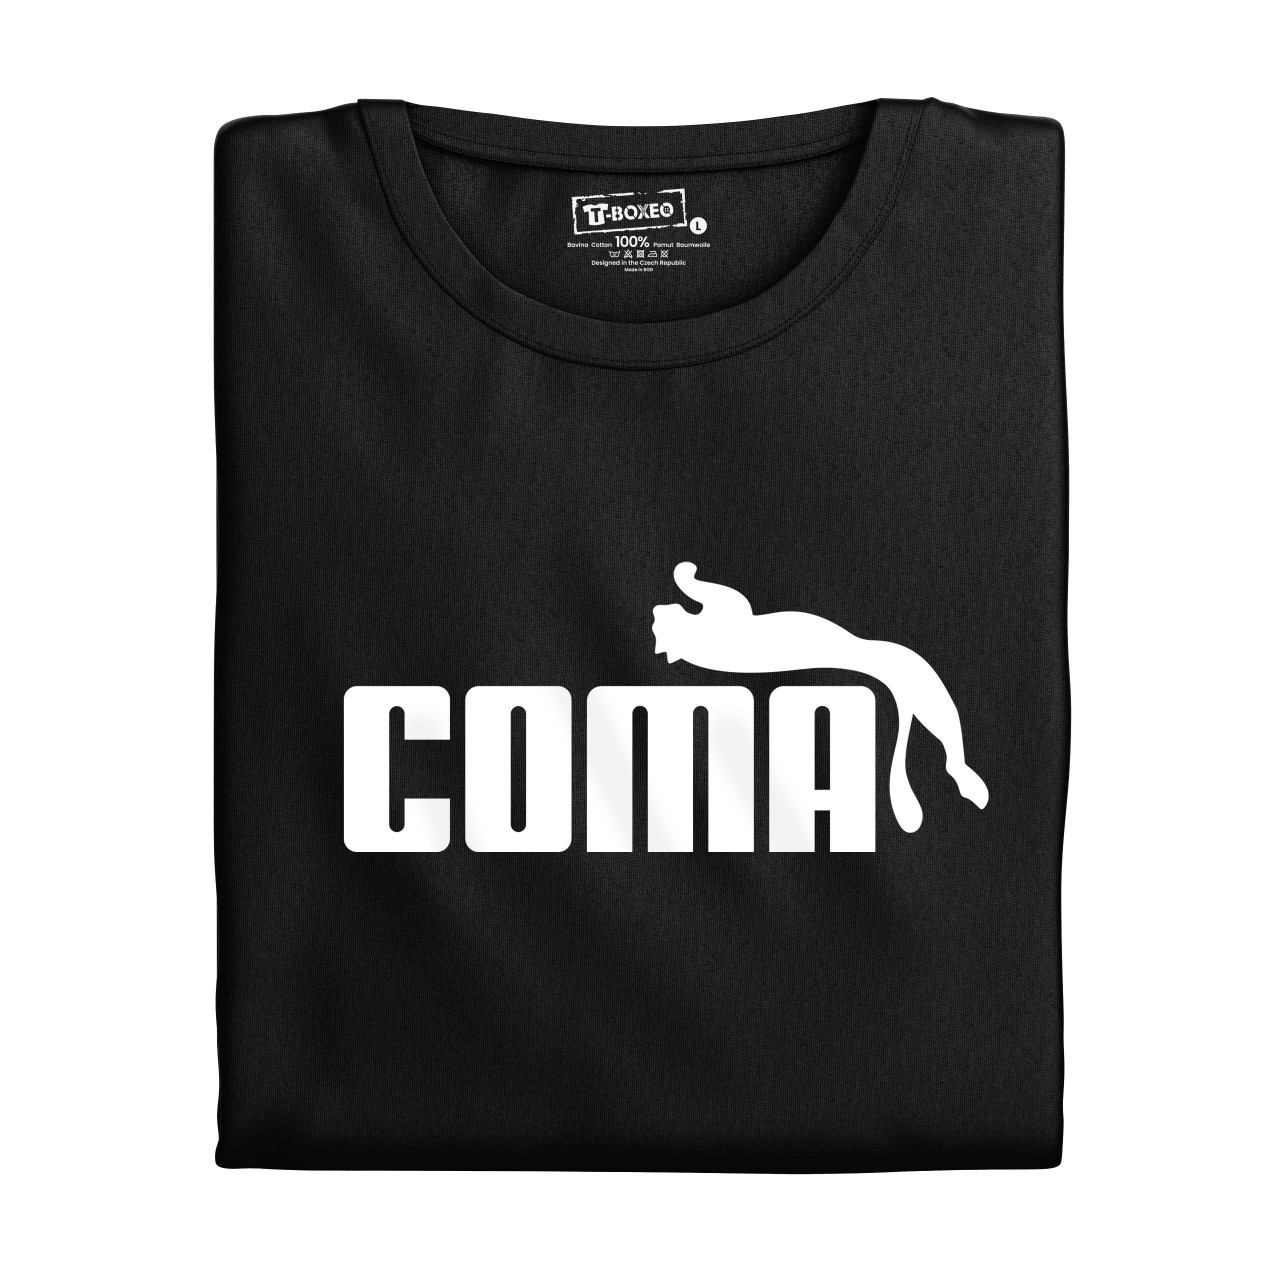 Dámské tričko s potiskem ”Kóma”